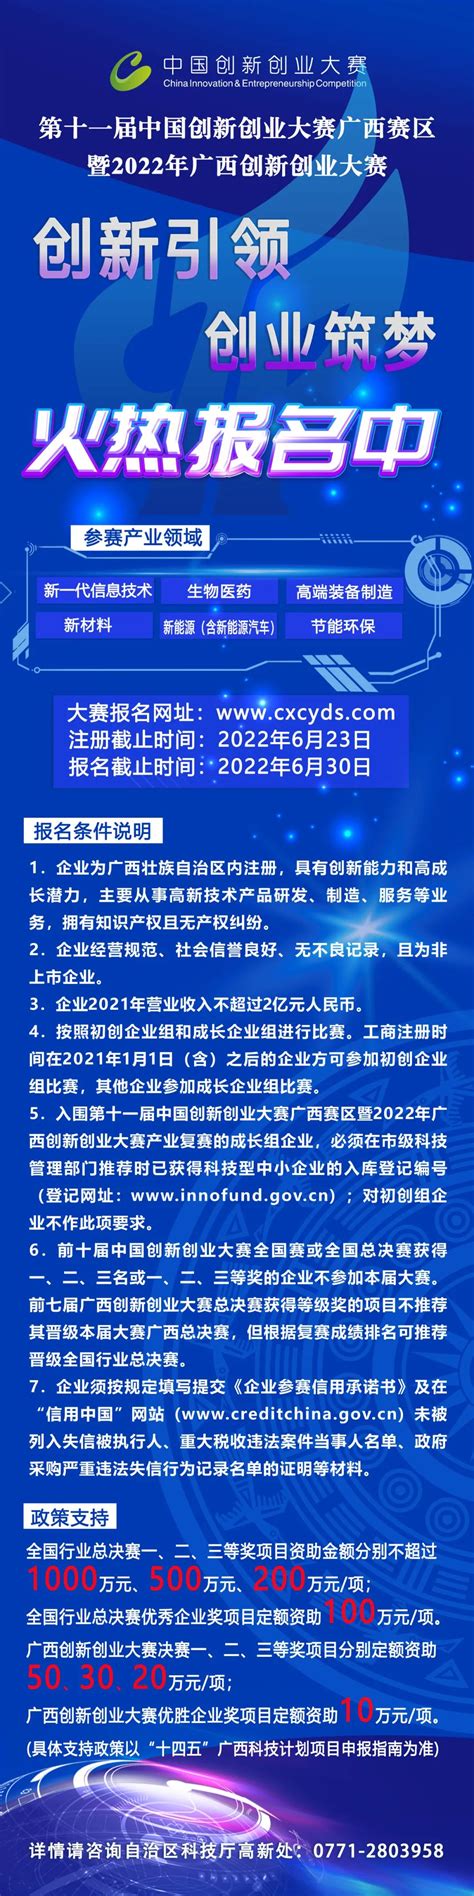 速报名！第十一届中国创新创业大赛广西赛区暨2022年广西创新创业大赛火热报名中|手机广西网